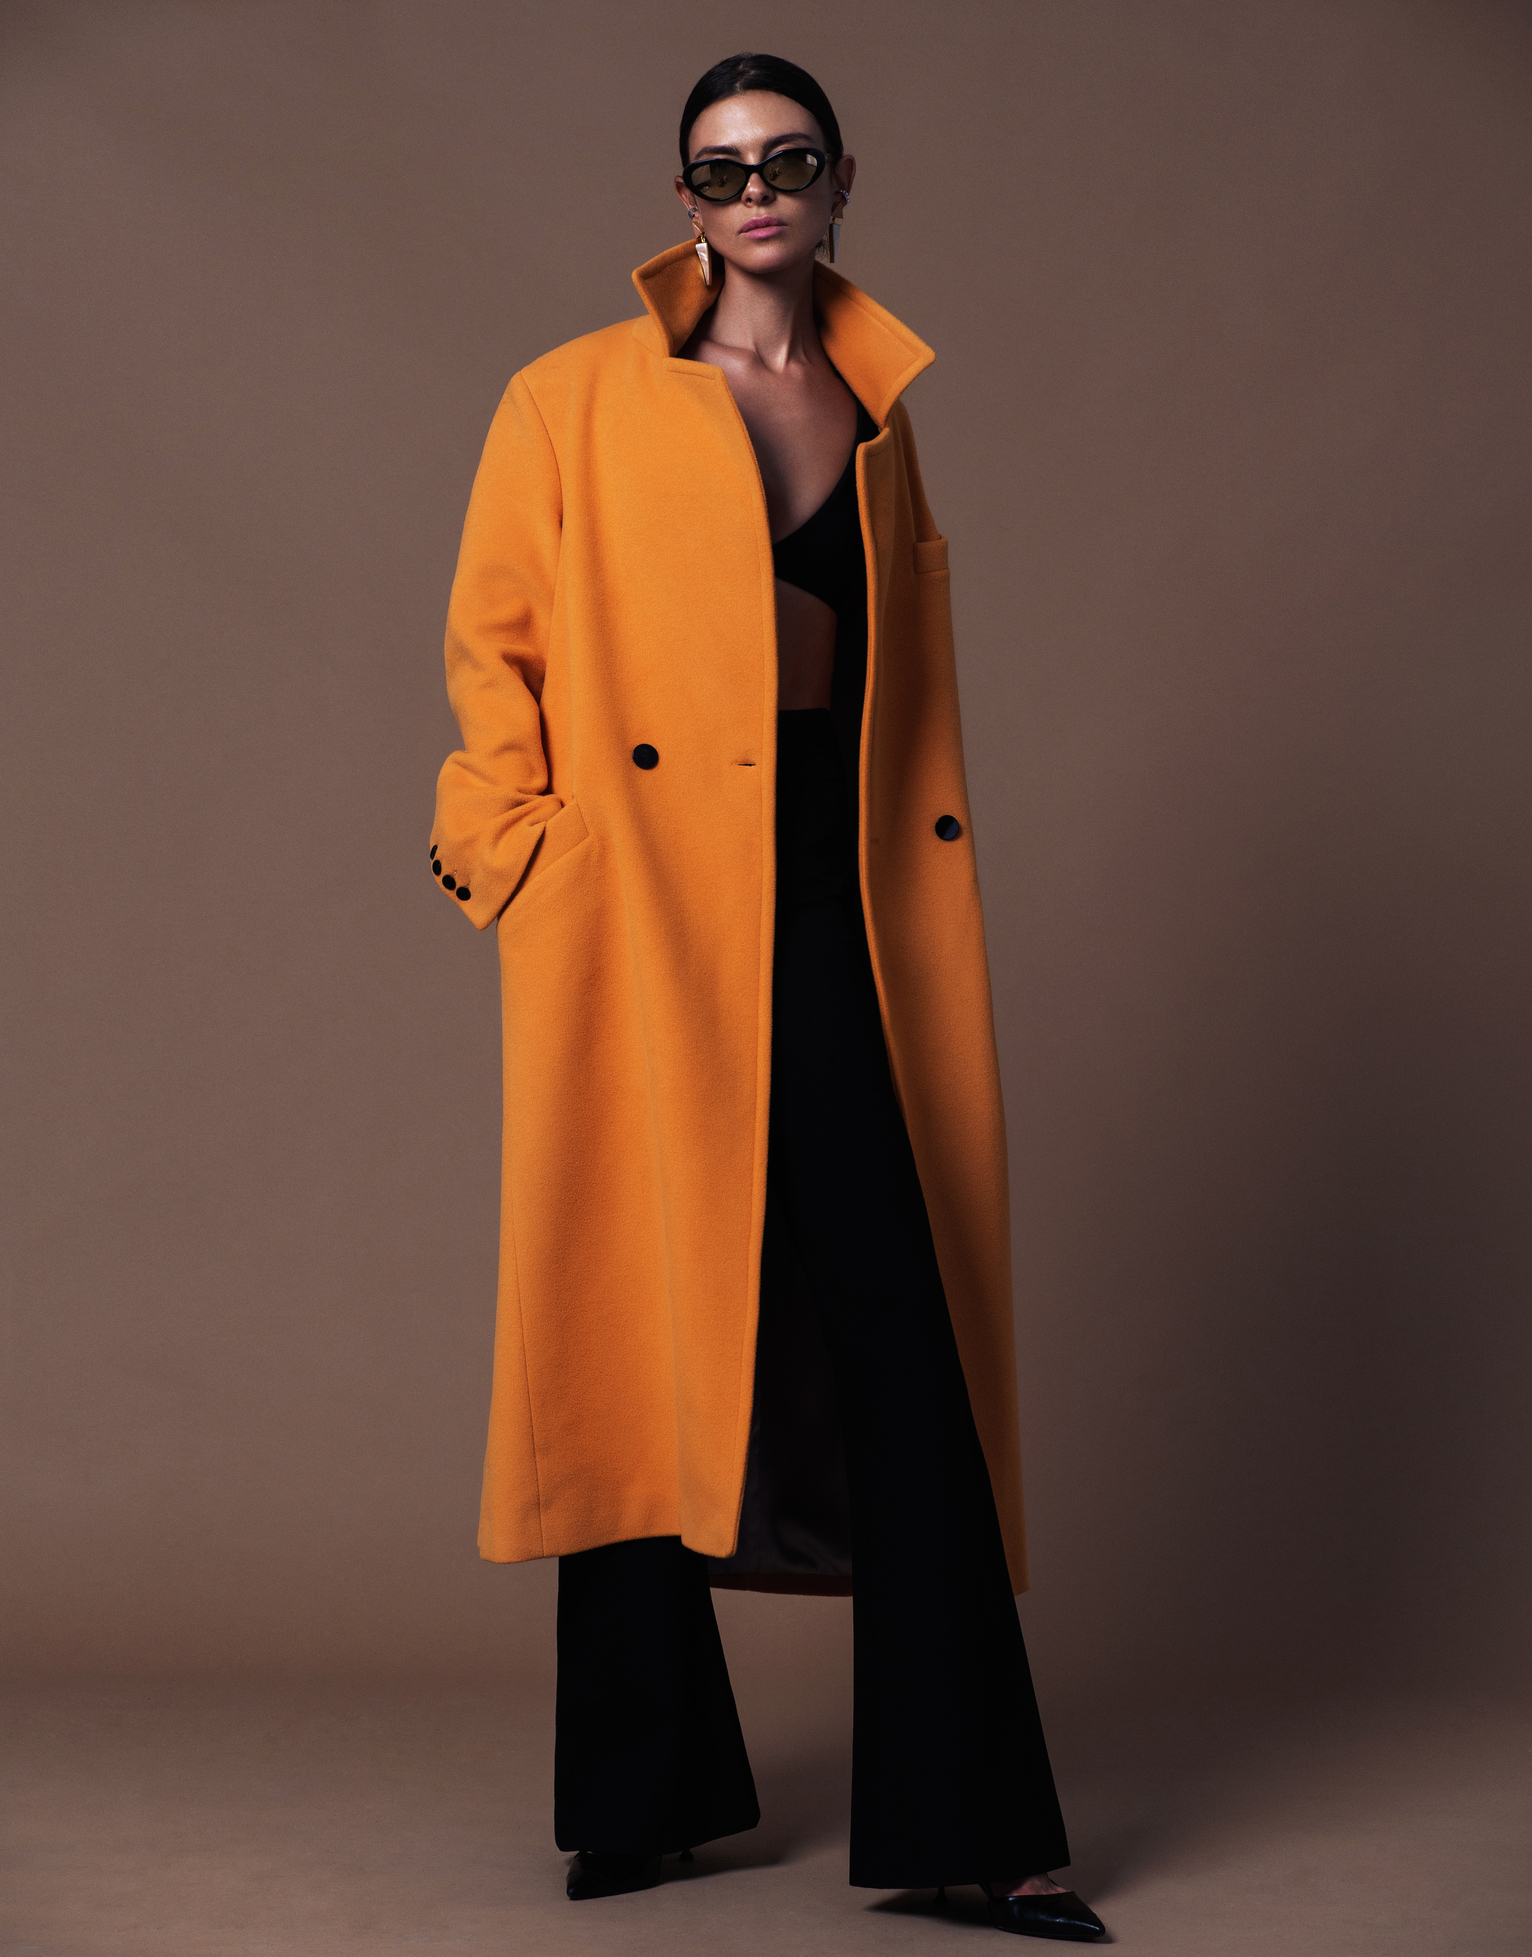 A woman modeling an orange coat